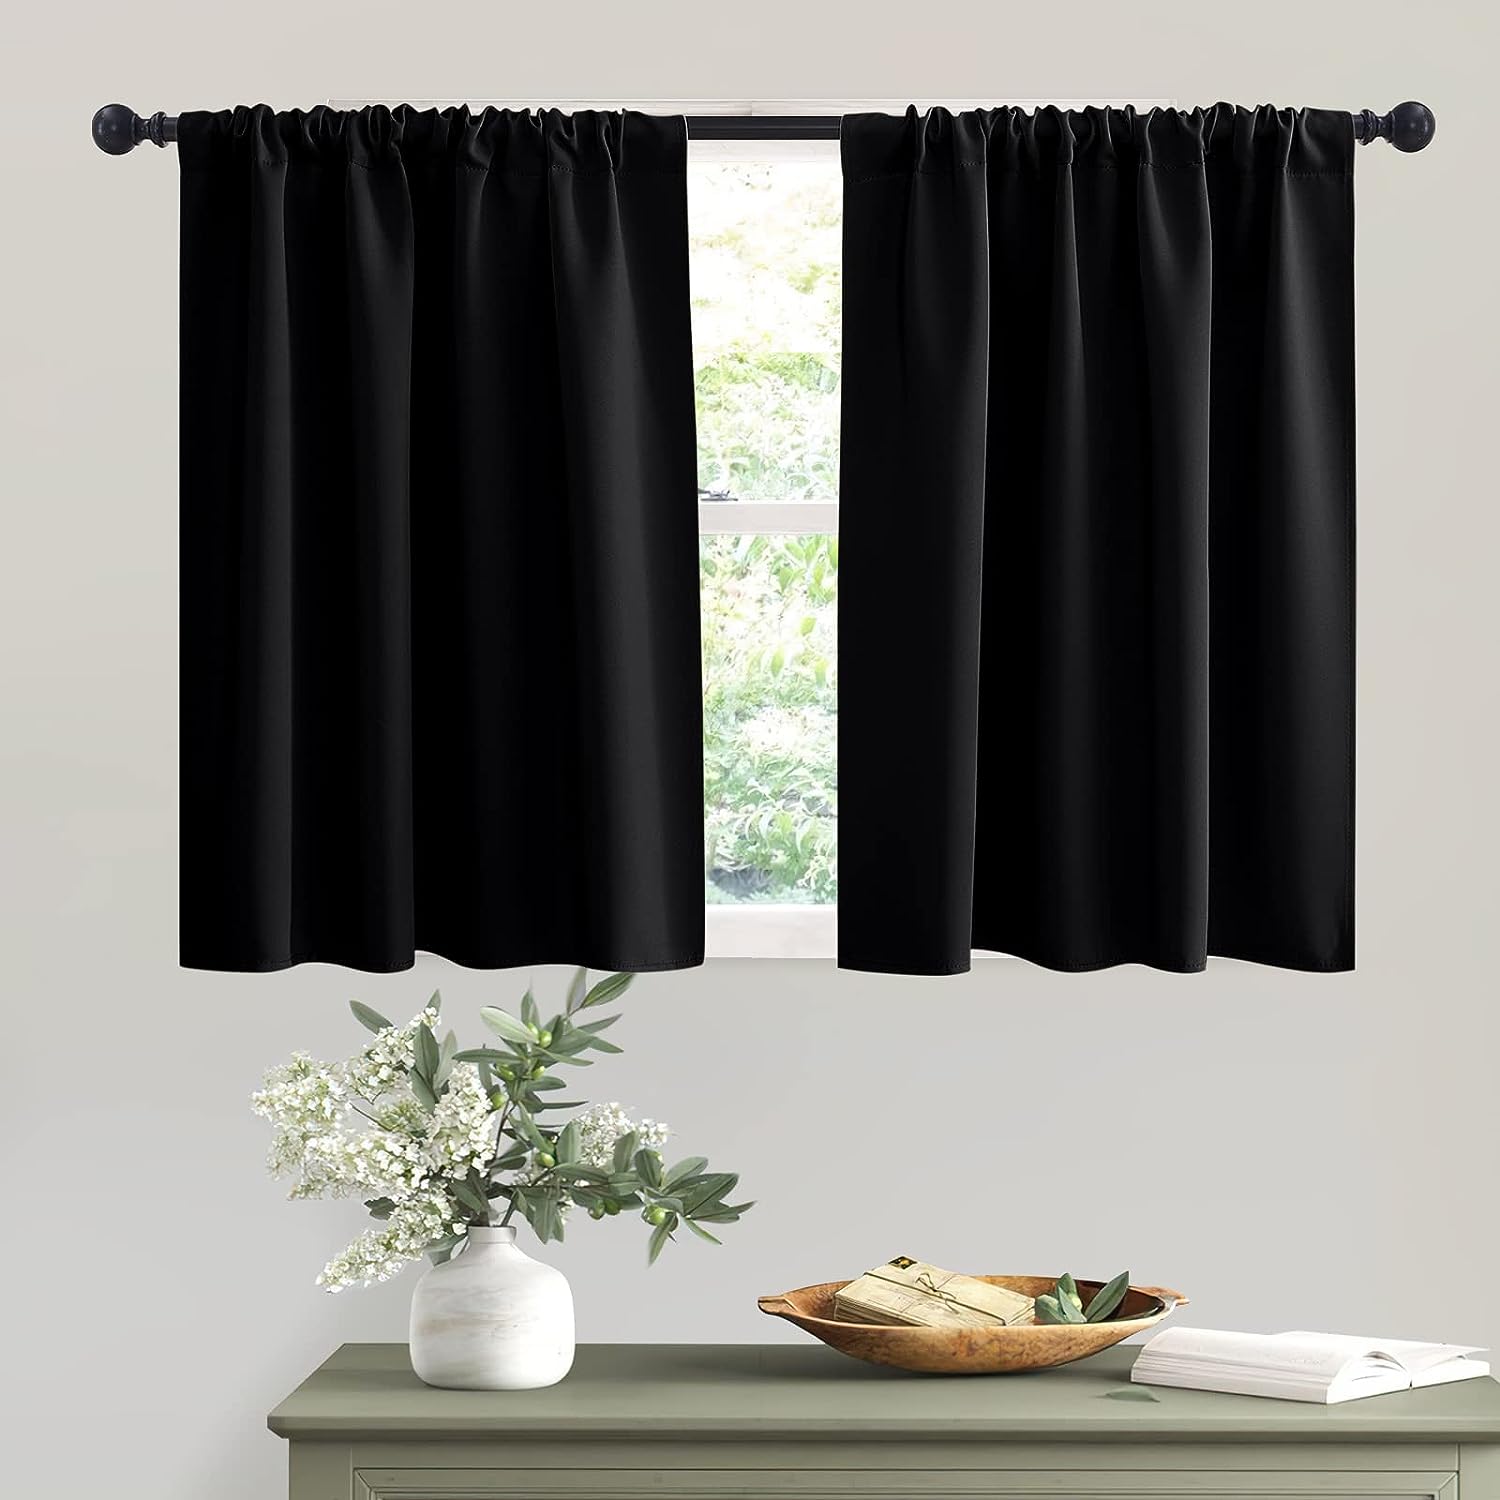 curtains for bathroom